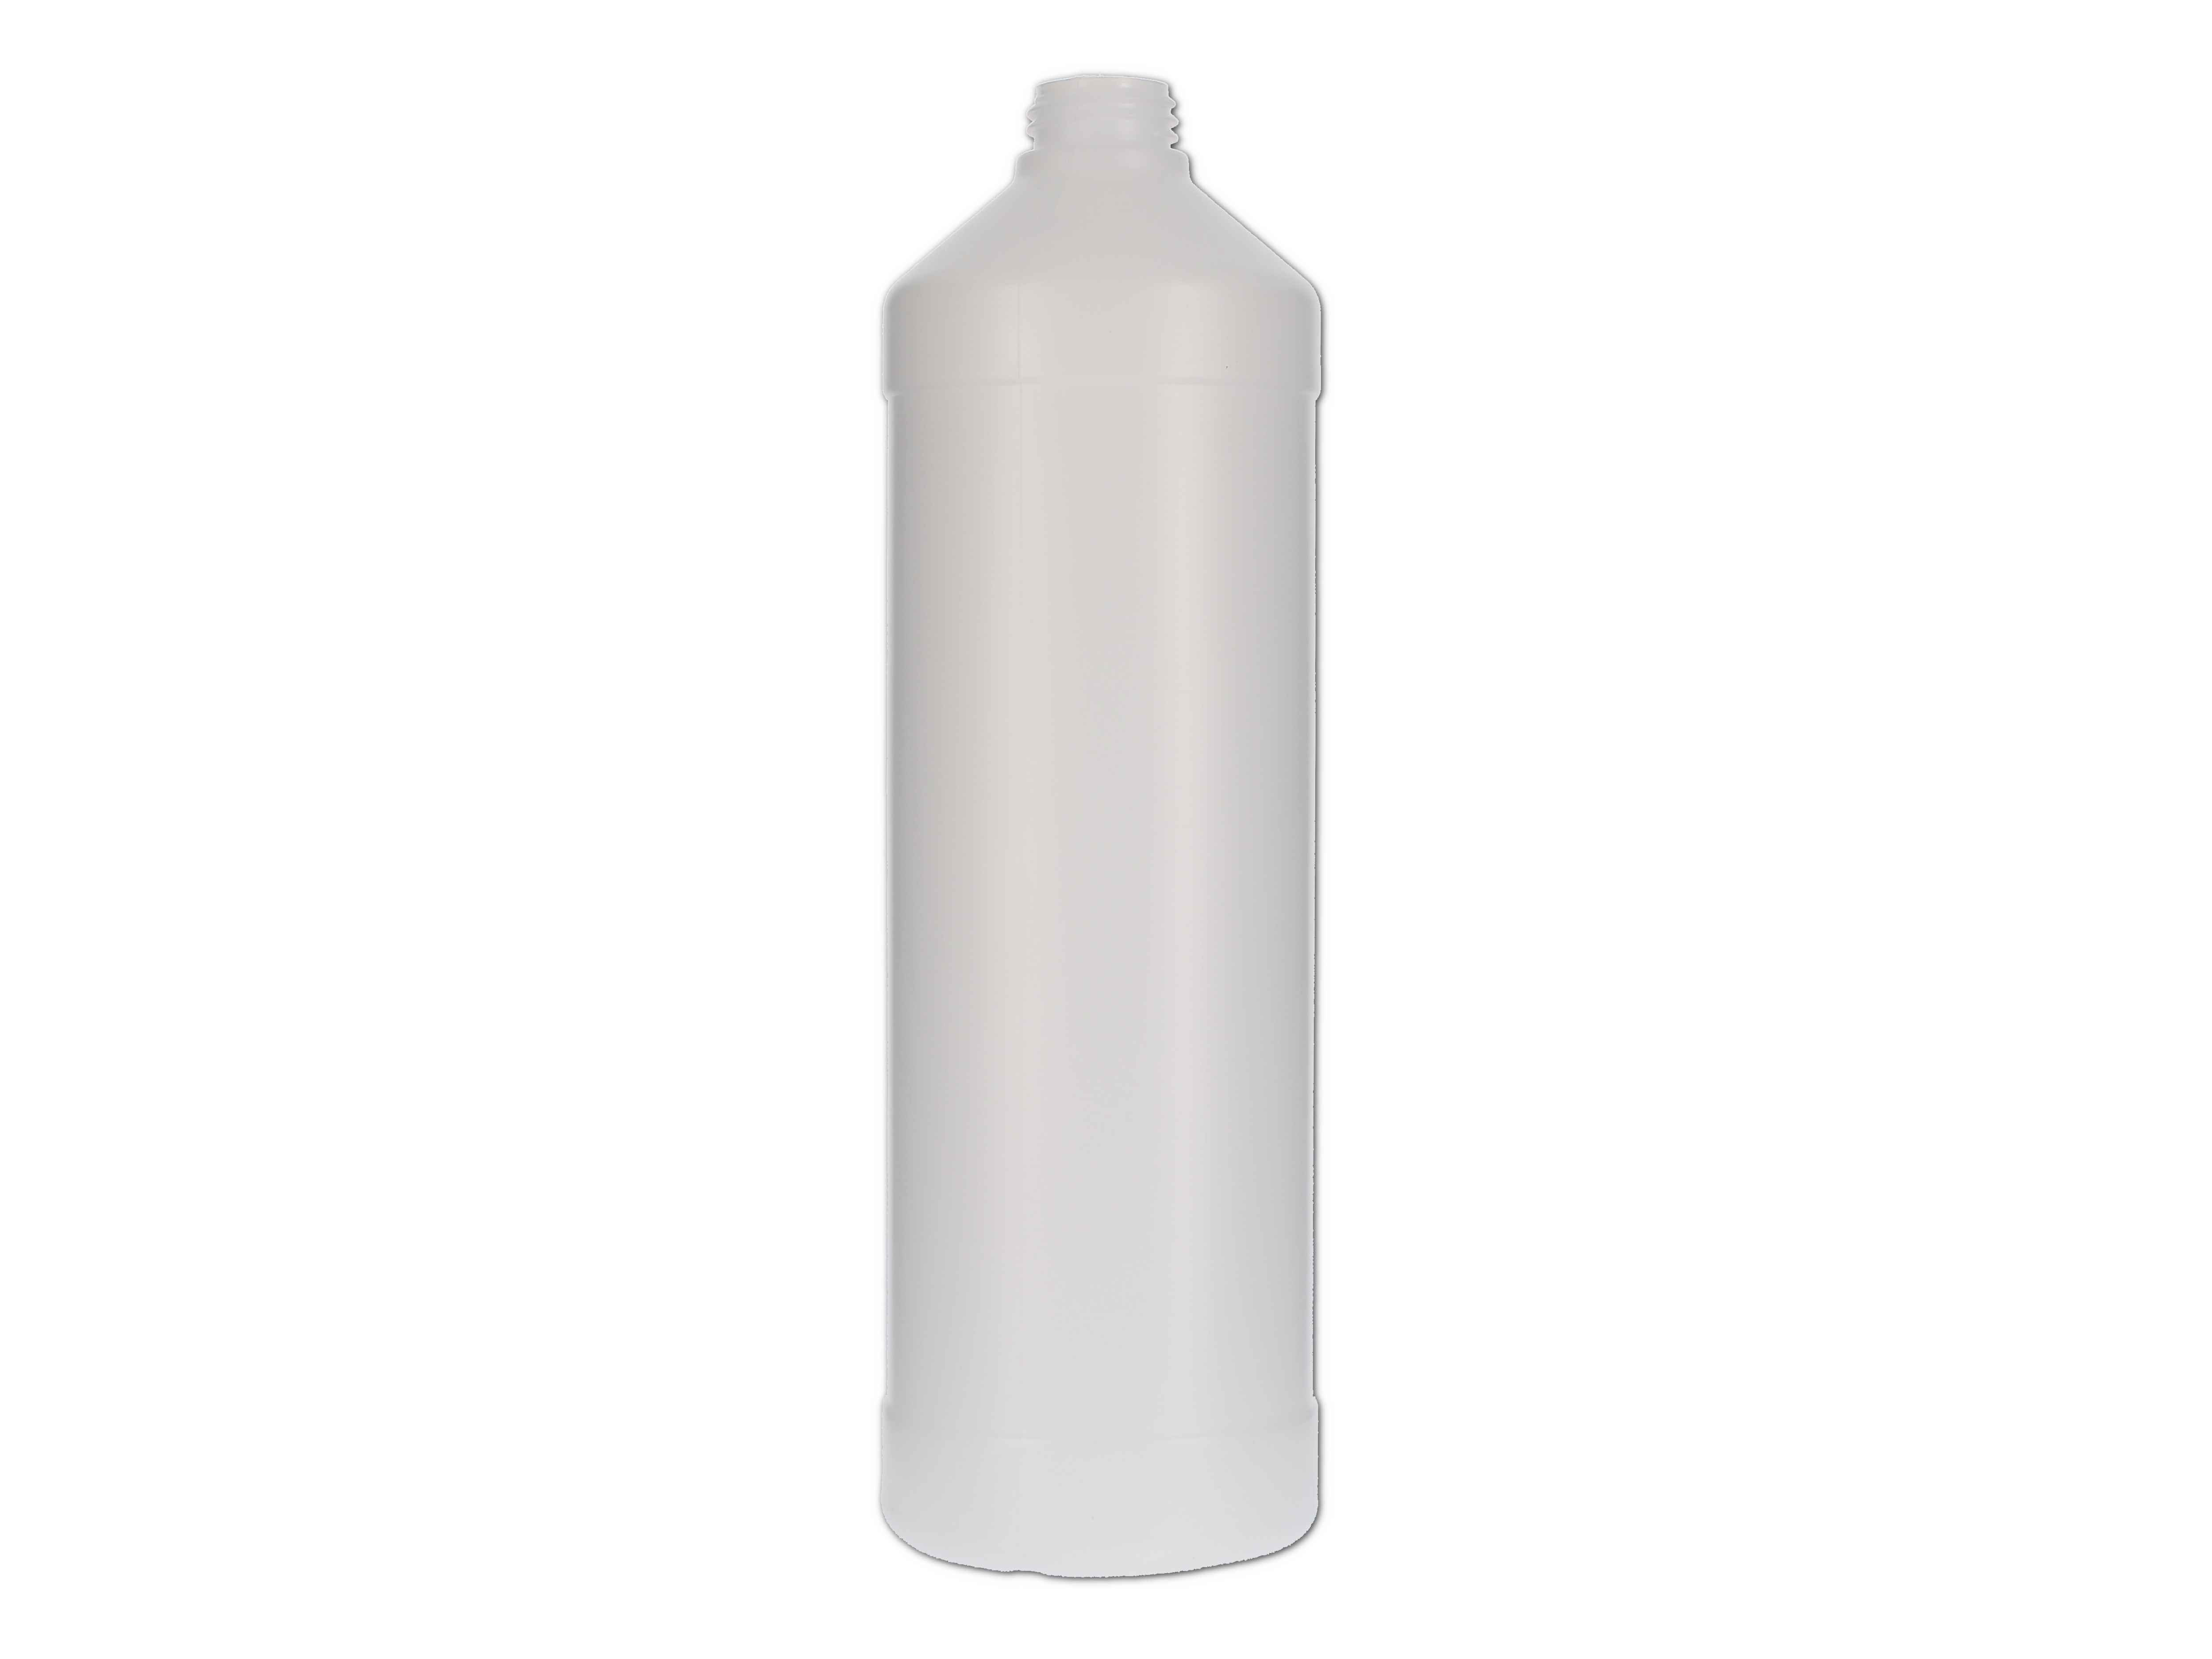    Kunststoff-Flasche rund, ohne Verschluss - 1000ml